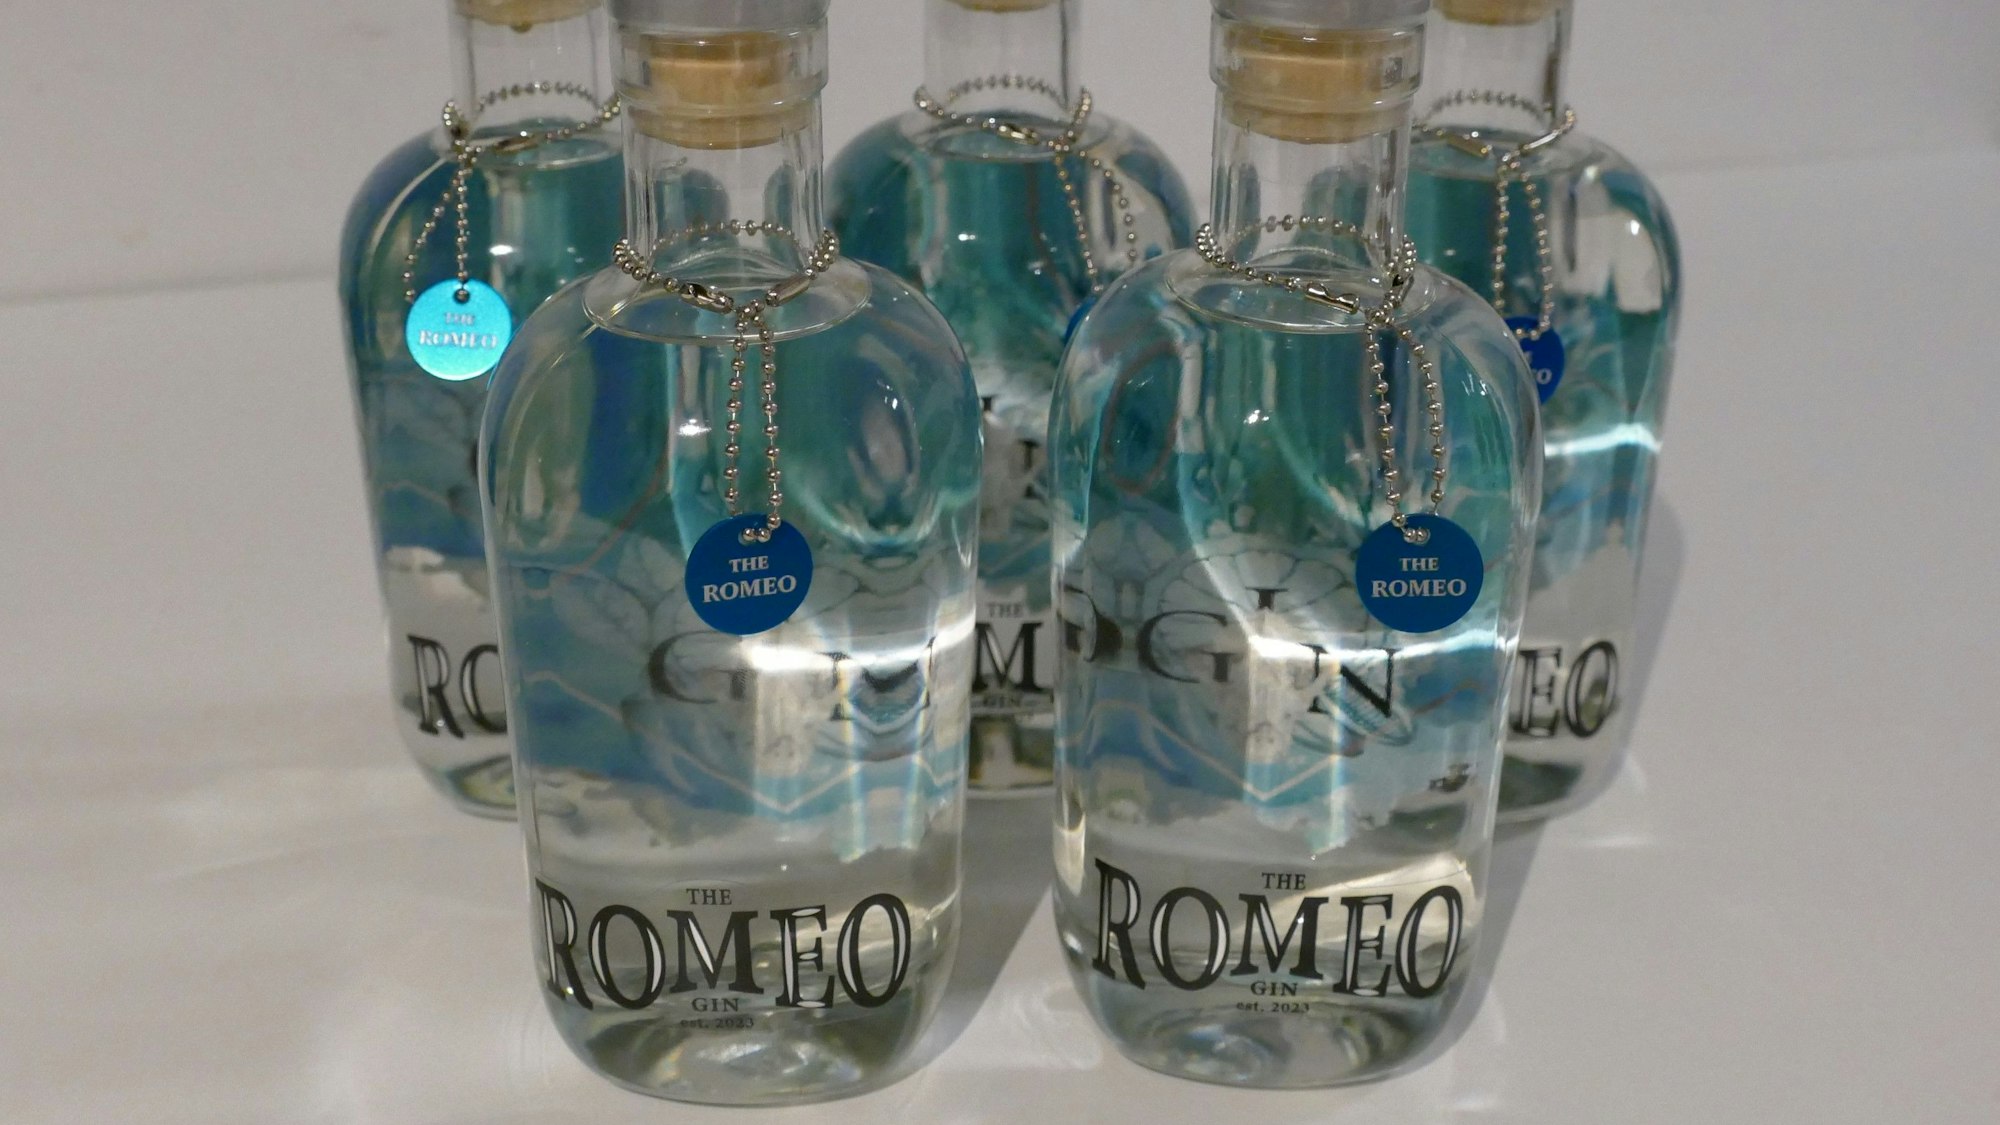 Flaschen mit durchsichtigem Inhalt und blauen Etiketten stehen vor einem weißen Hintergrund.